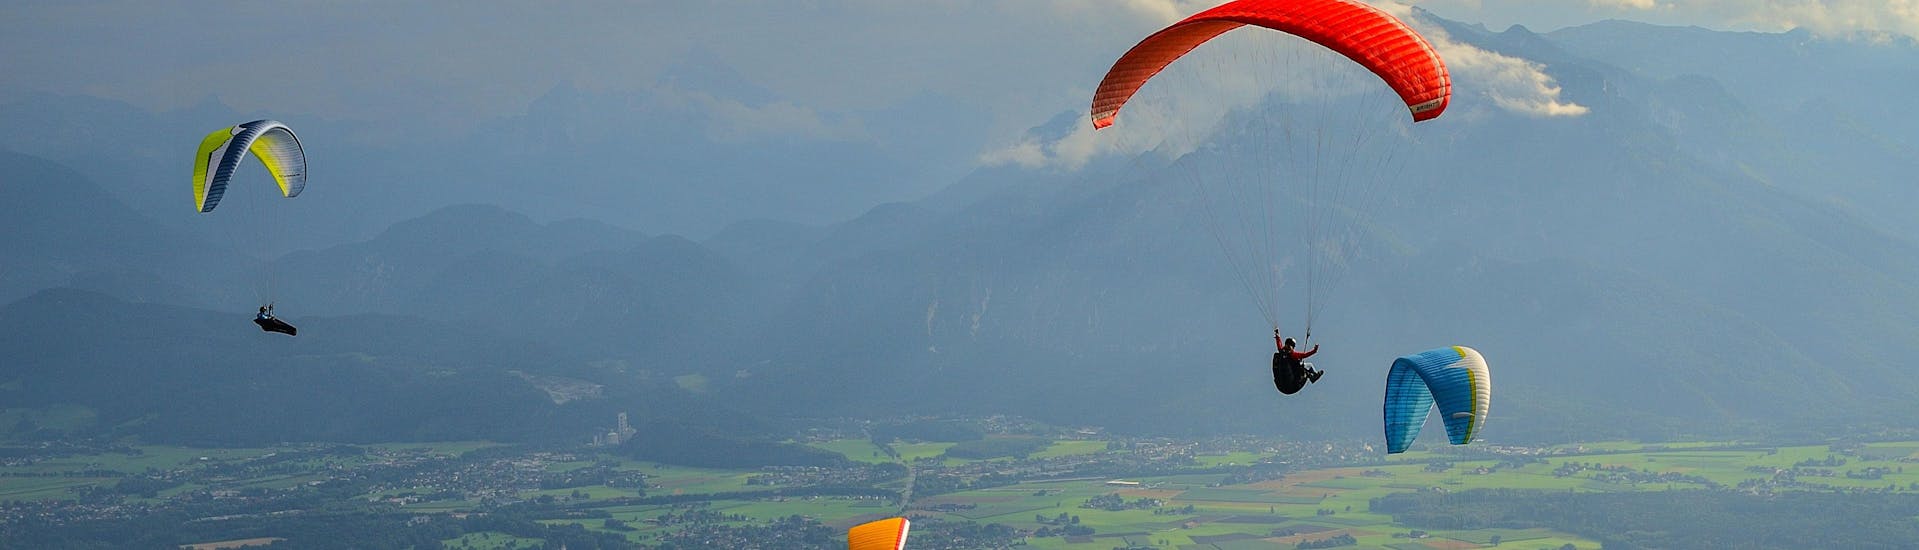 Salzburg (stad): Een tandemvlucht vindt plaats in een van de hotspots voor paragliding.